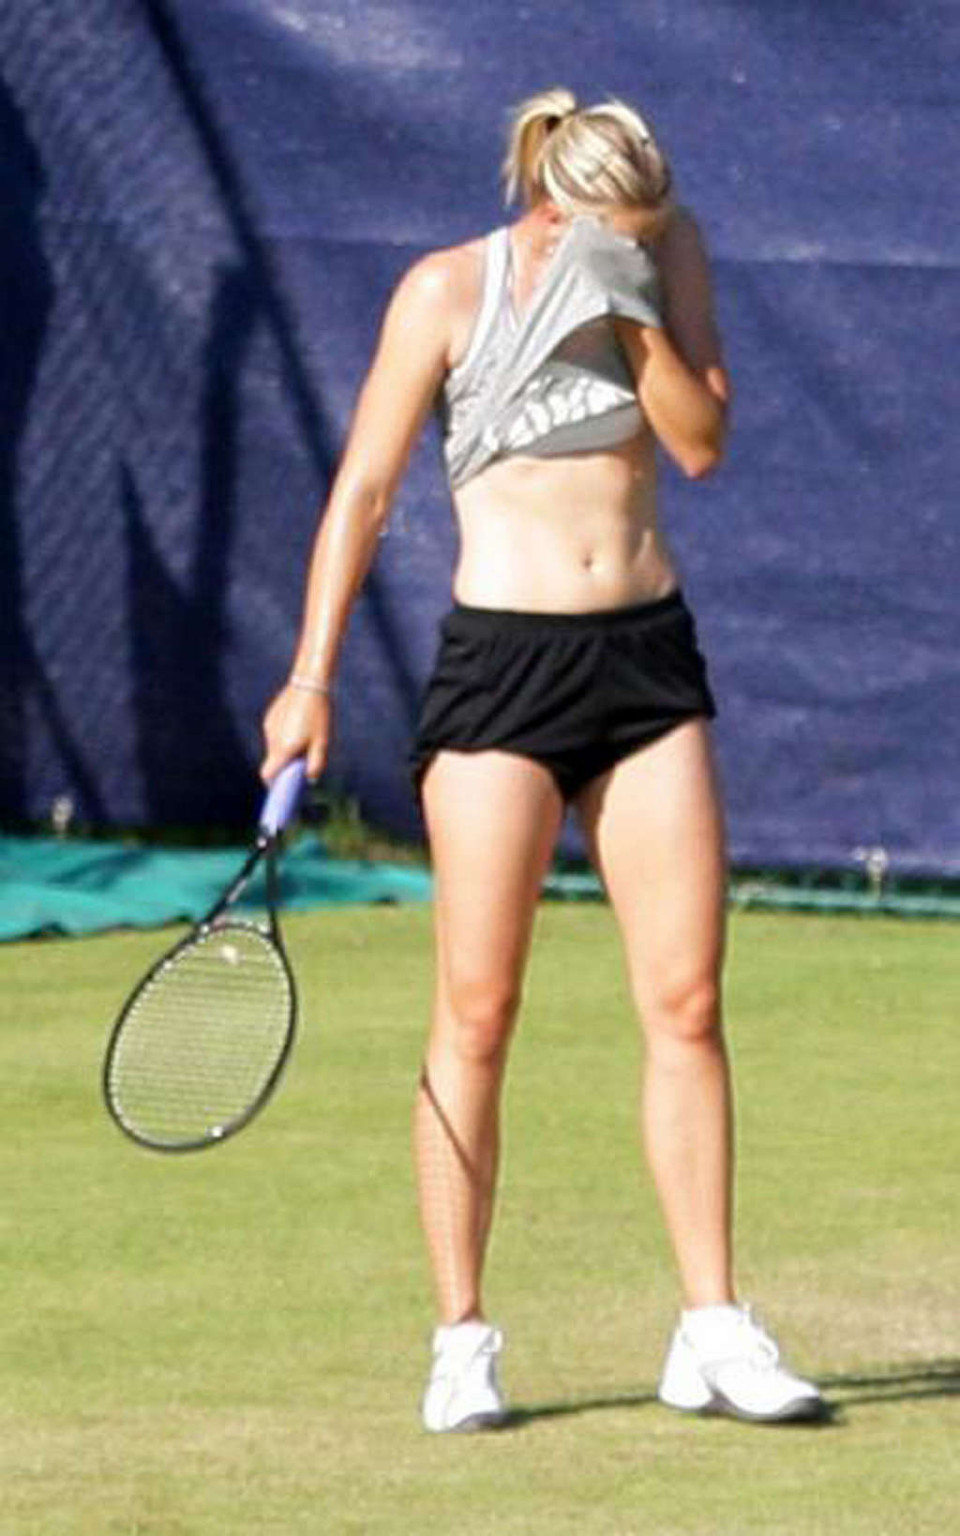 Maria Sharapova nipple slip while play tennis paparazzi shoots #75346406